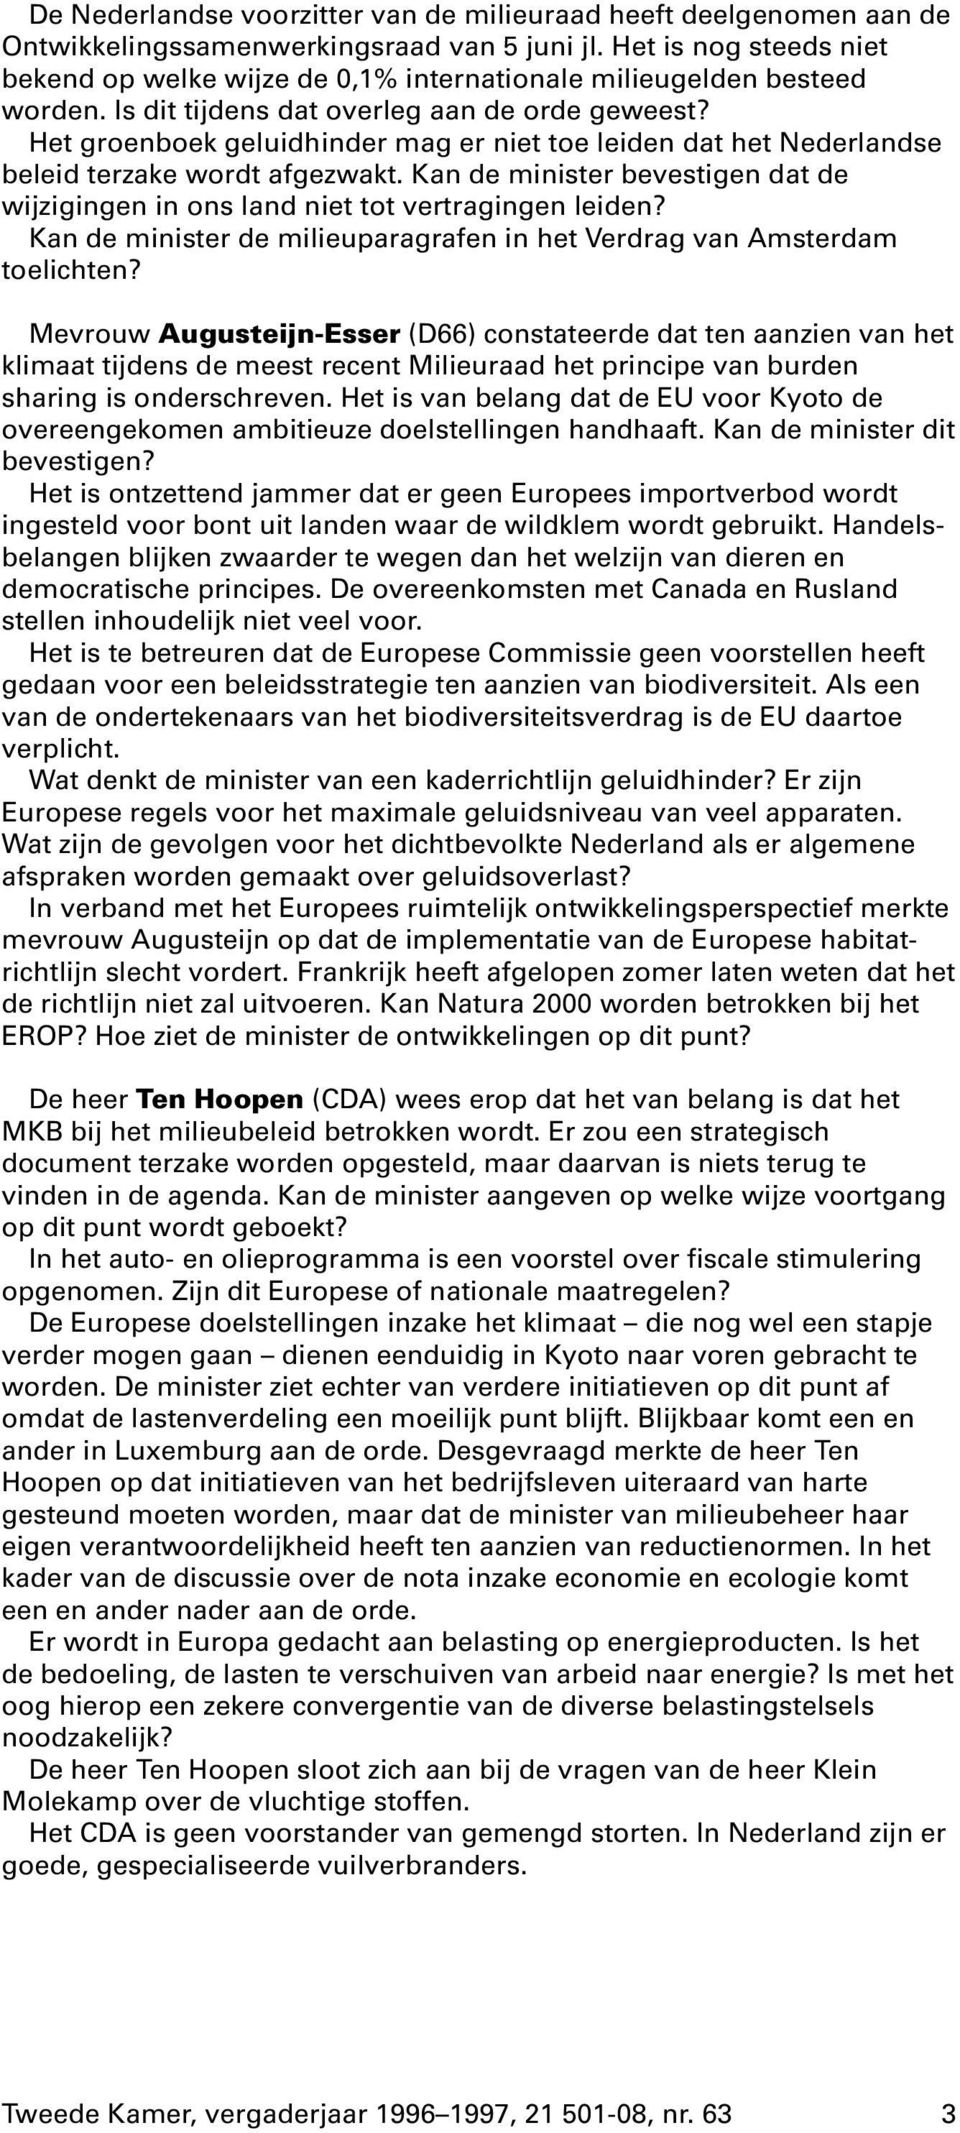 Het groenboek geluidhinder mag er niet toe leiden dat het Nederlandse beleid terzake wordt afgezwakt. Kan de minister bevestigen dat de wijzigingen in ons land niet tot vertragingen leiden?